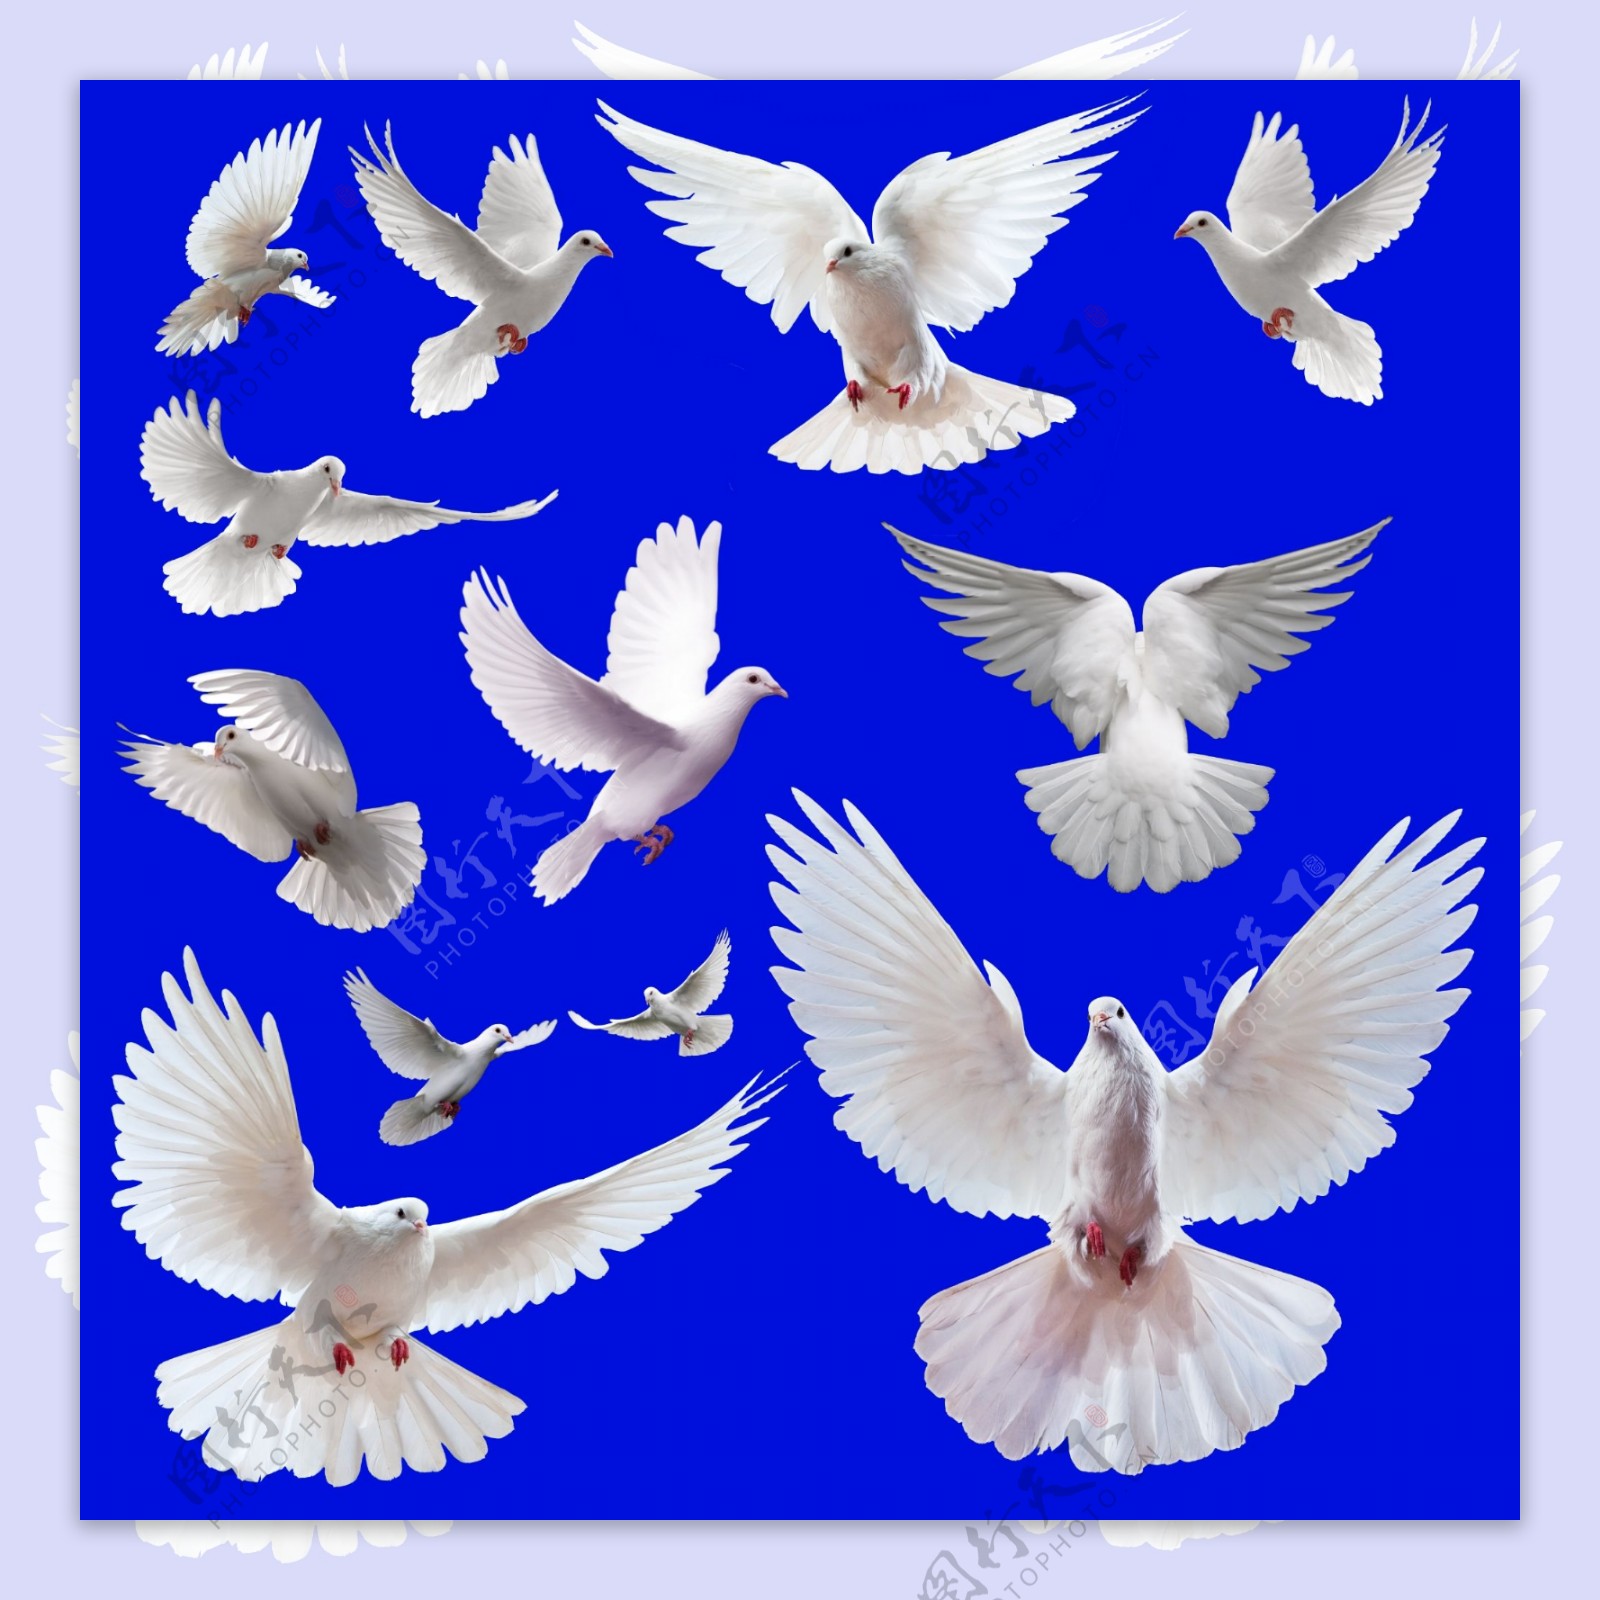 振翅飞翔的白鸽图片素材-编号14260042-图行天下